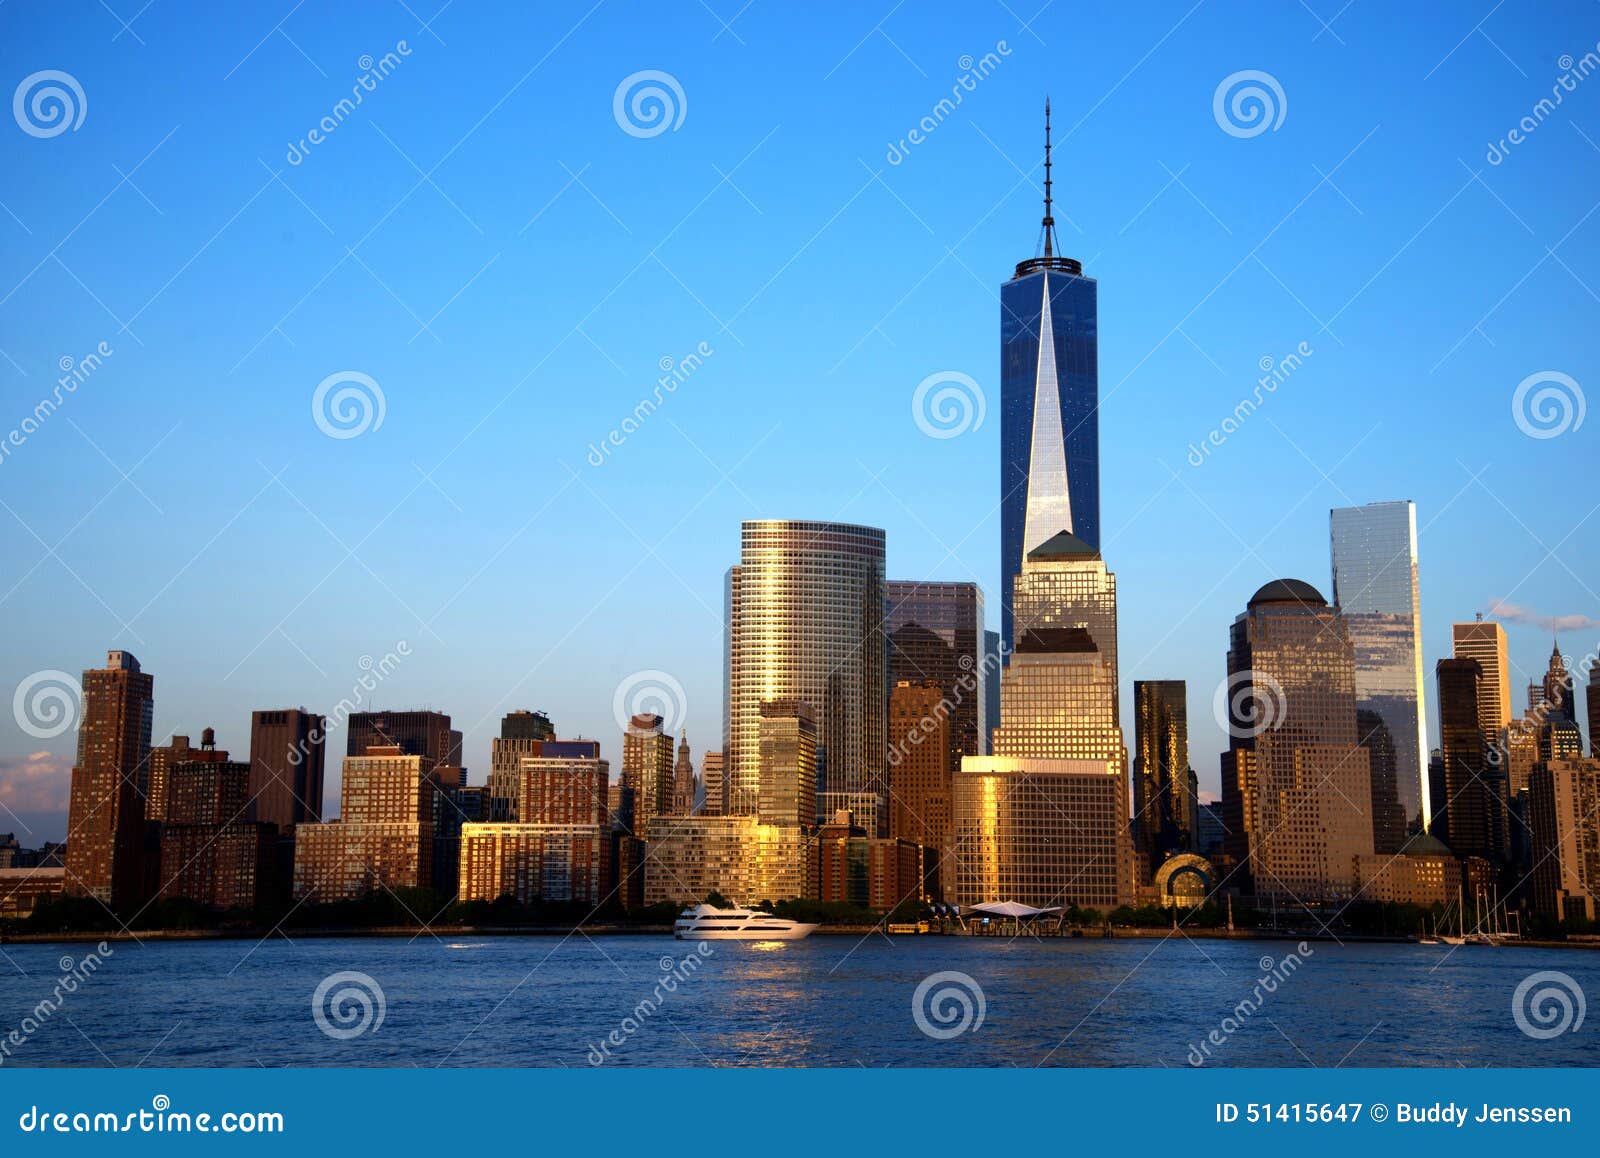 NYC自由塔. 日落在有自由塔的纽约